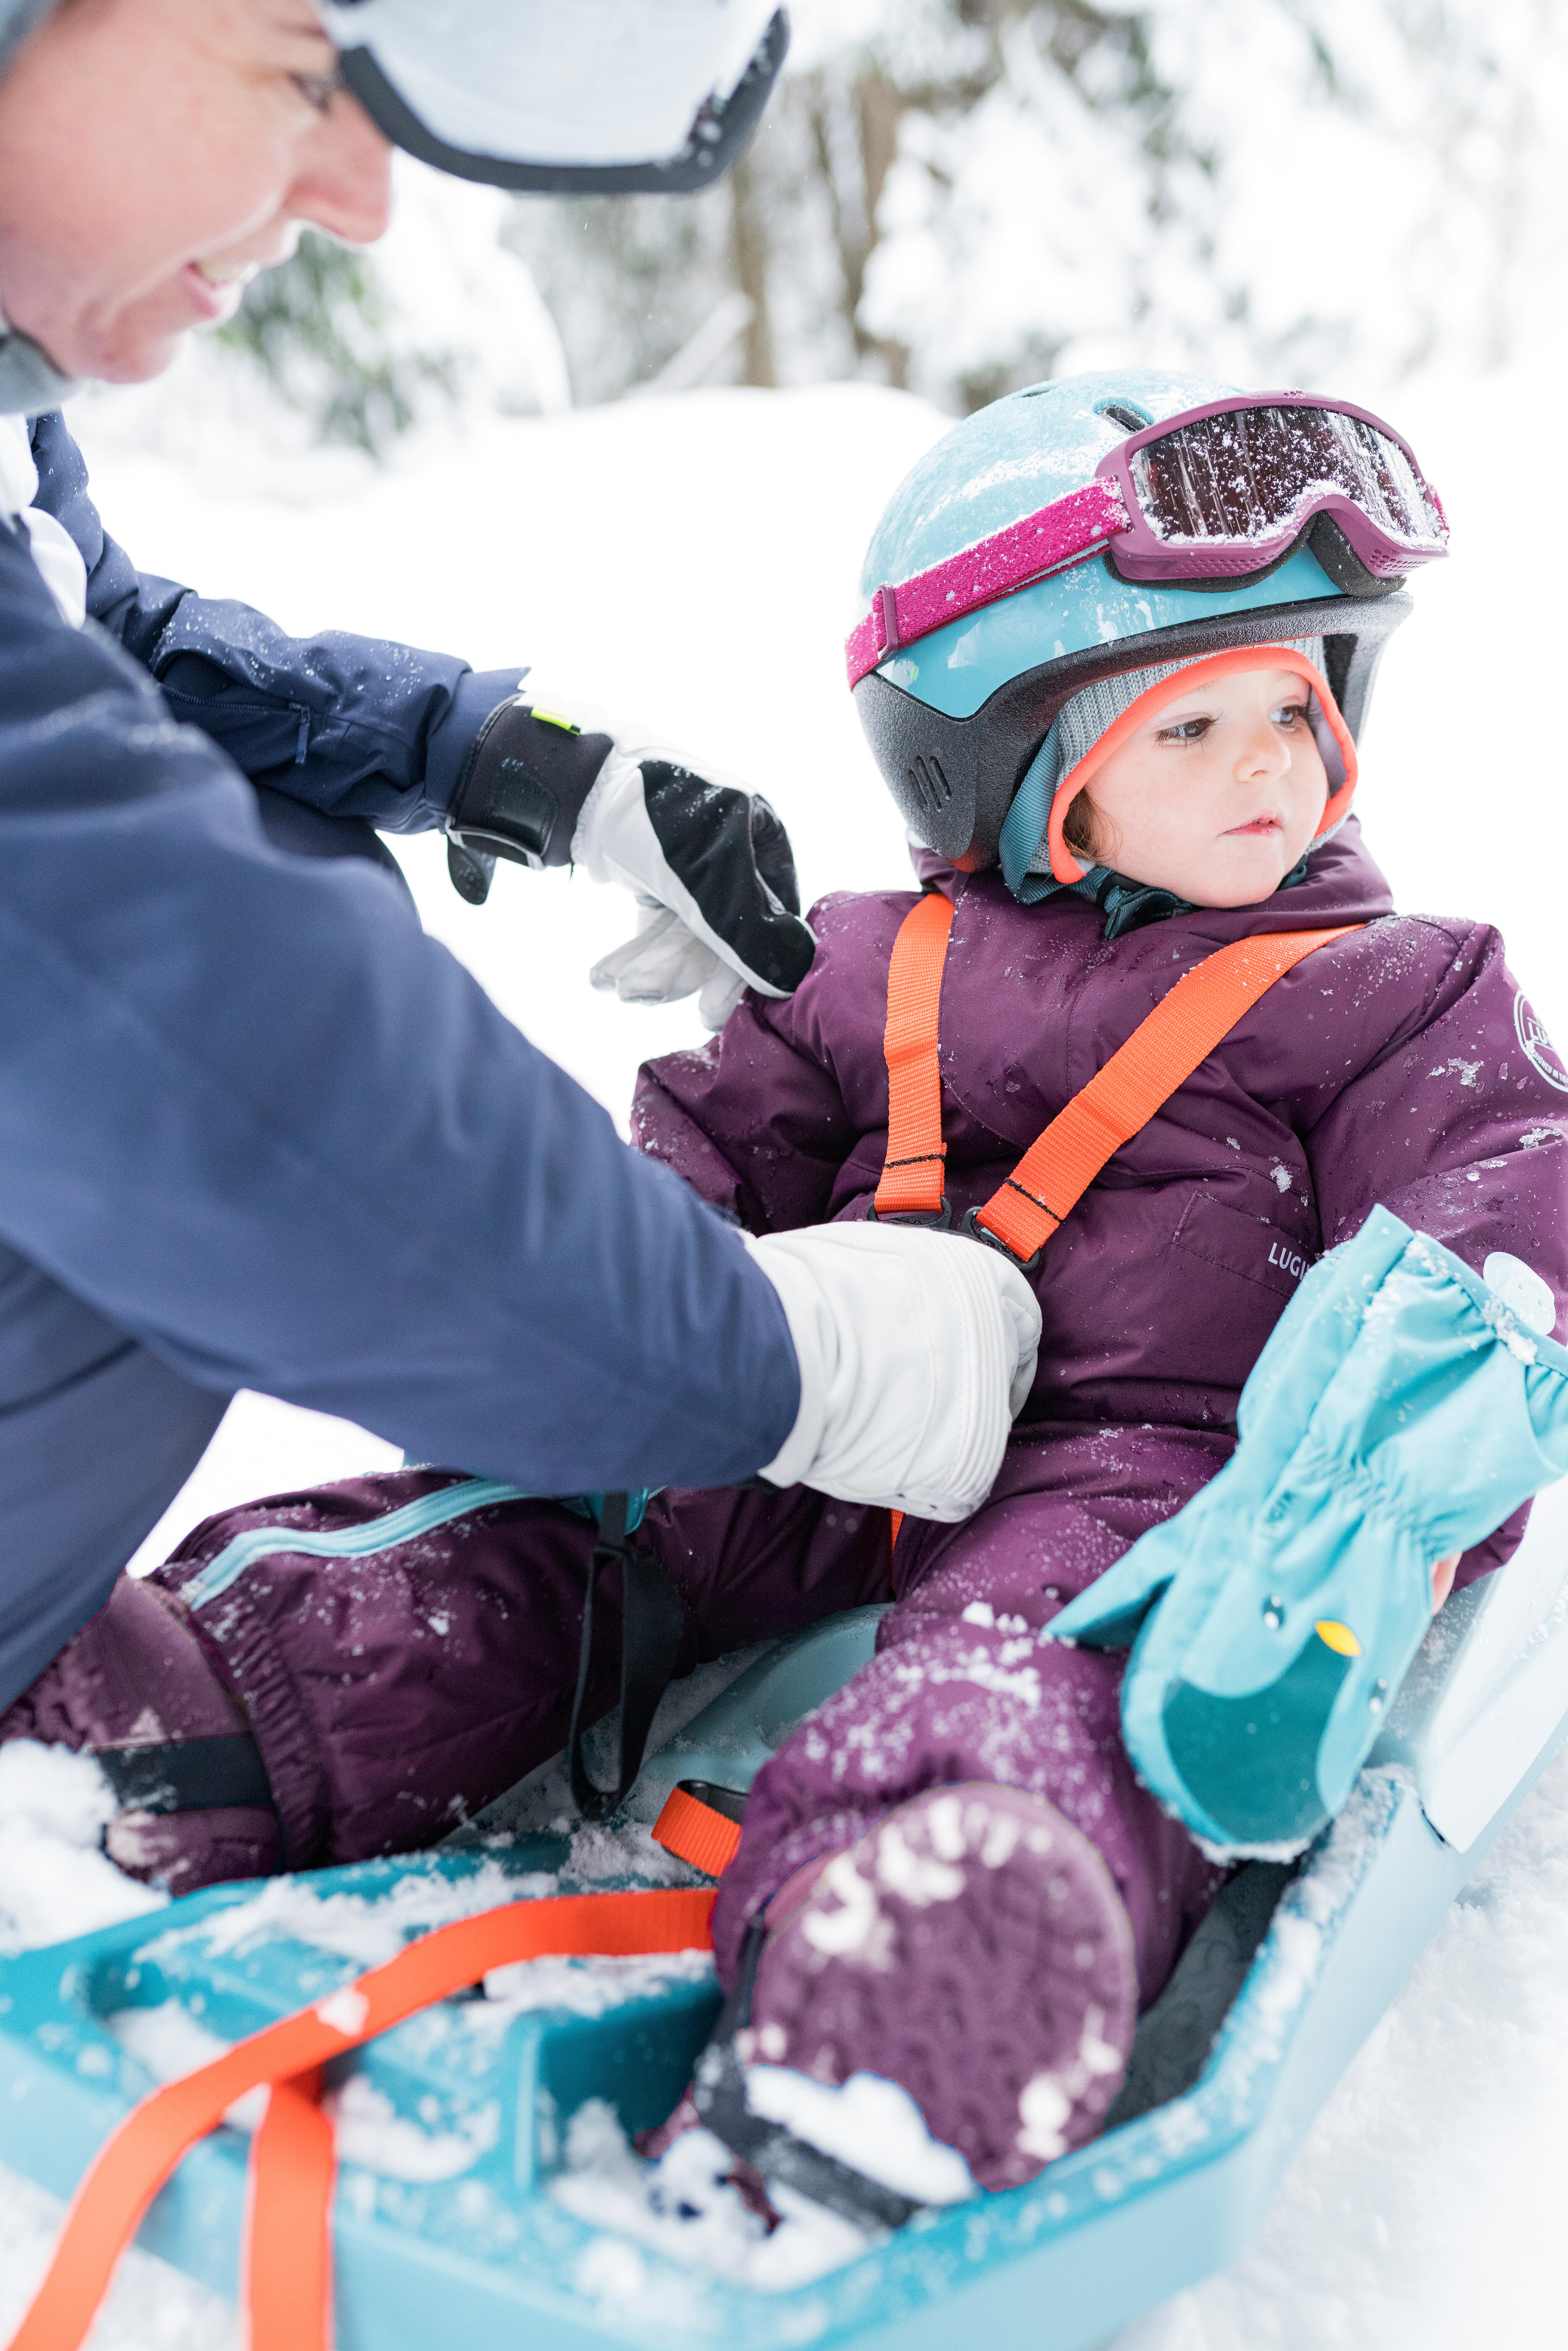 Traîneau à neige pour enfant - Sports Aux Puces Mascouche